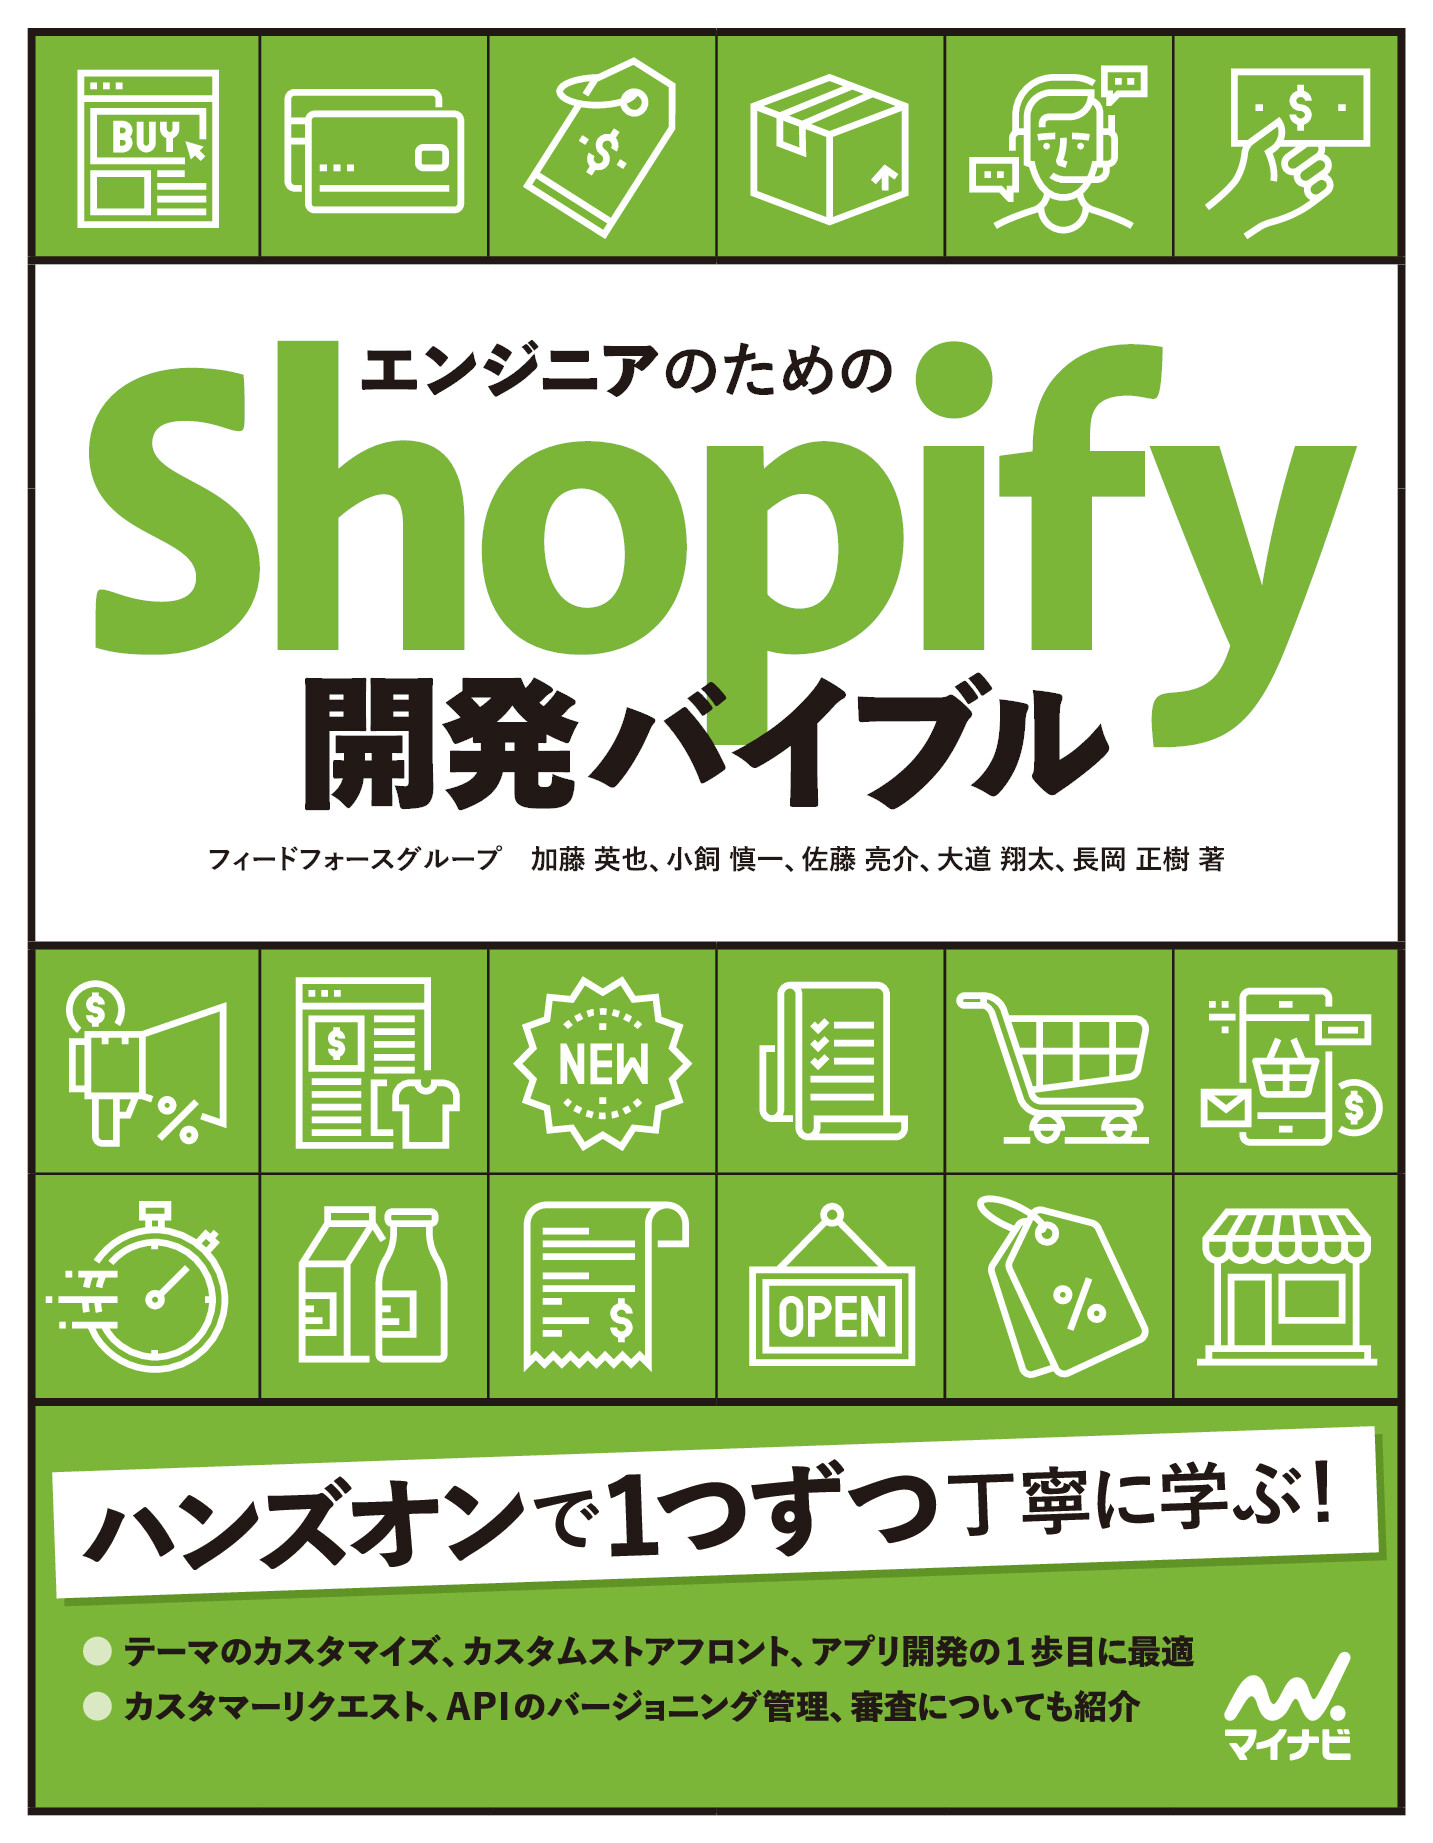 エンジニアのためのShopify開発バイブル【委託】 - 達人出版会